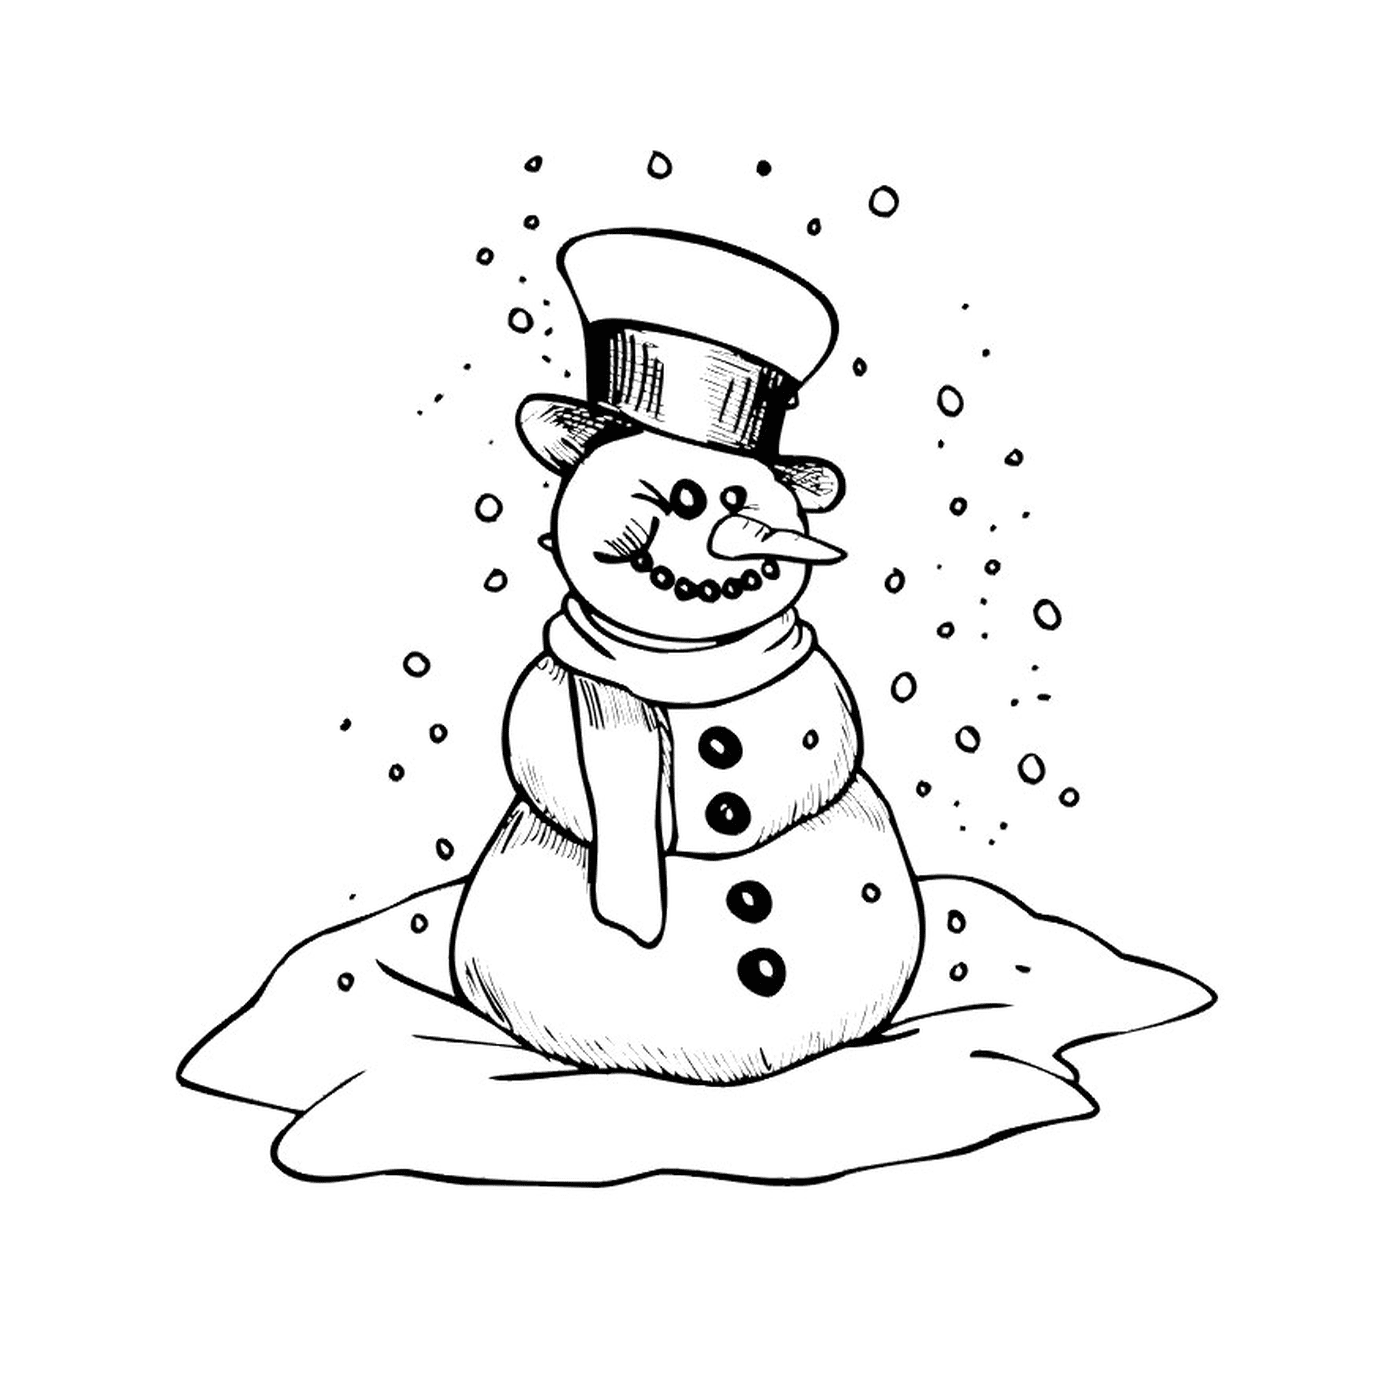  Hombre de nieve sonriendo 